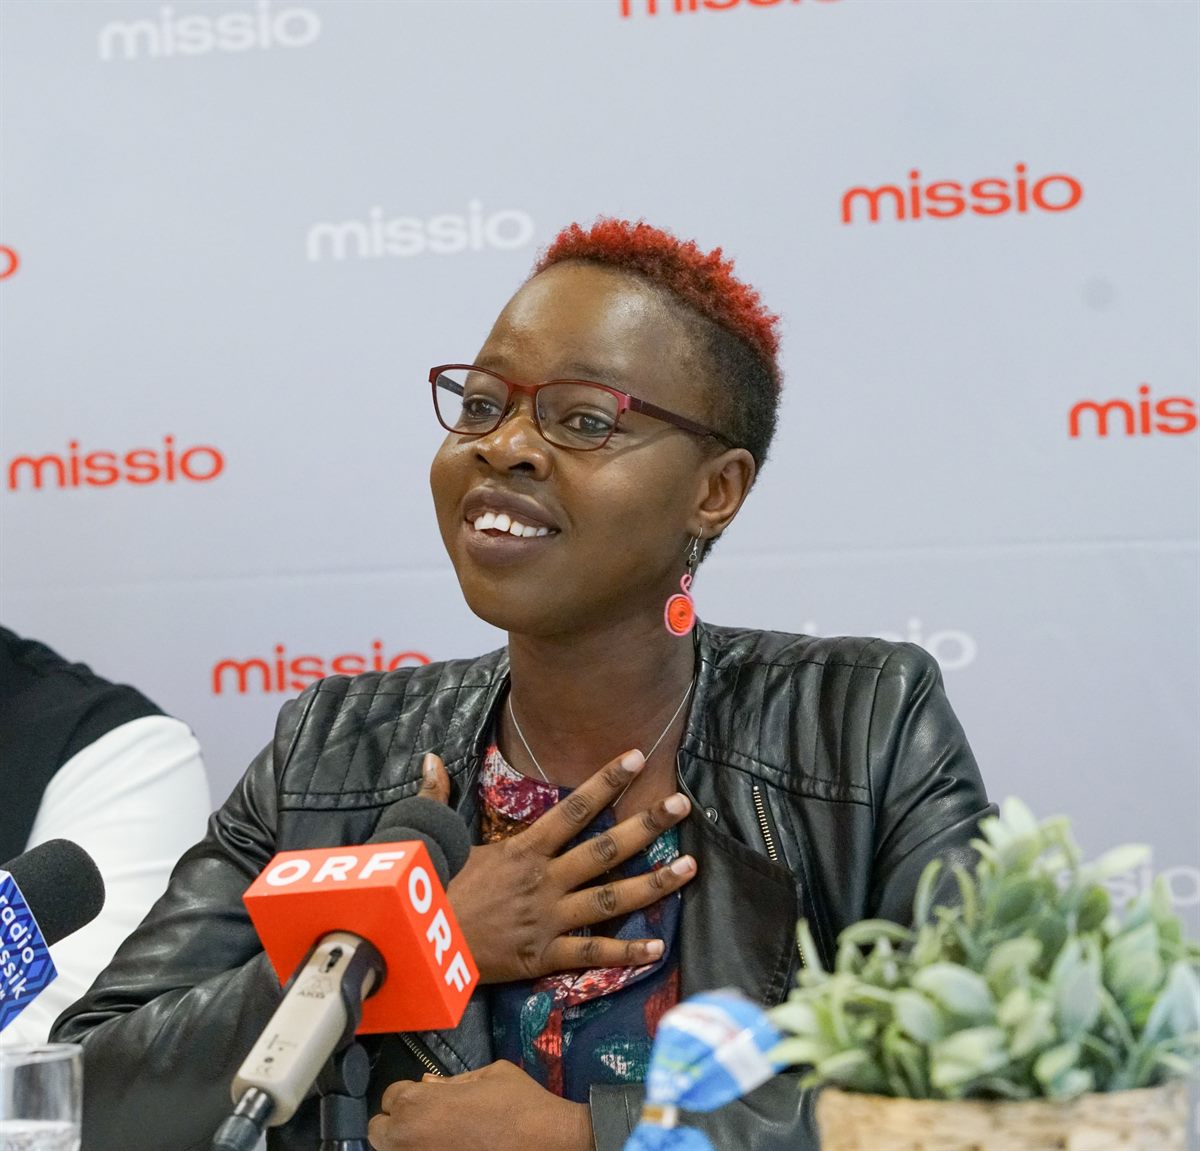 Missio-Projektpartnerin Sophie Otiende (Kenia) im Kampf gegen Menschenhandel